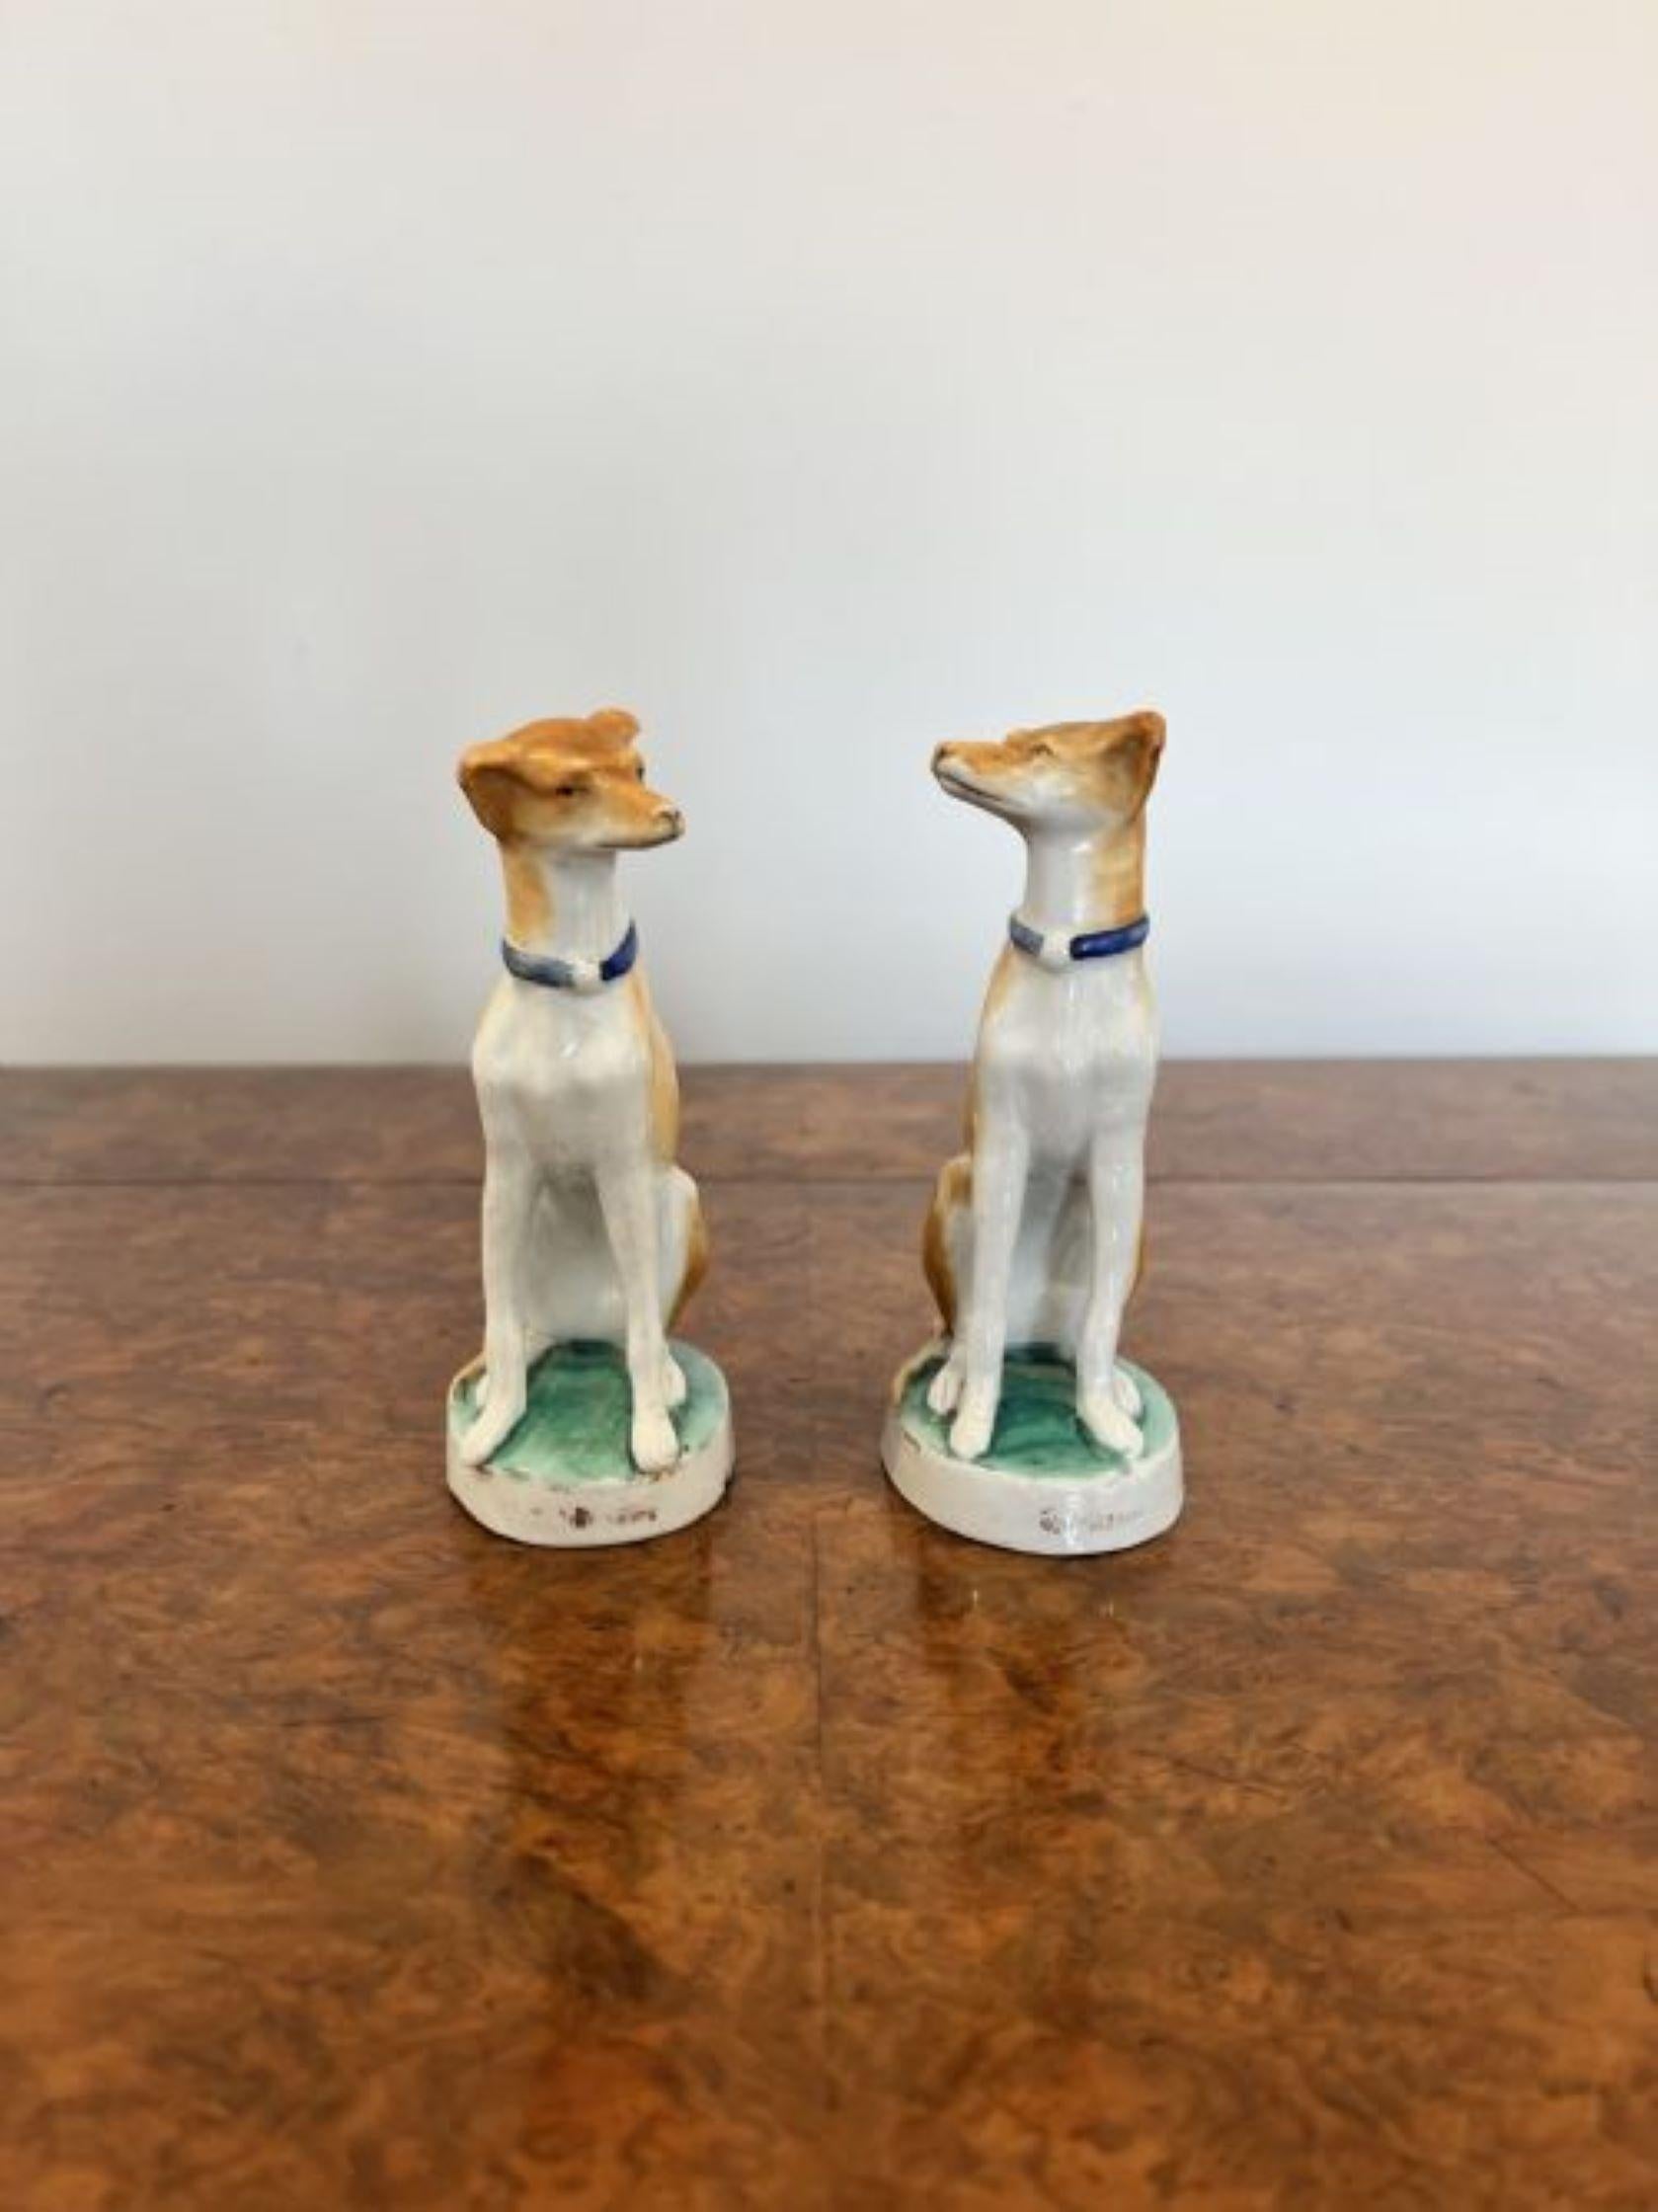 Ein Paar antiker viktorianischer Qualitäts-Porzellanhunde, die auf einem ovalen Sockel sitzen und passende blaue Halsbänder in weißer und hellbrauner Farbe tragen. 